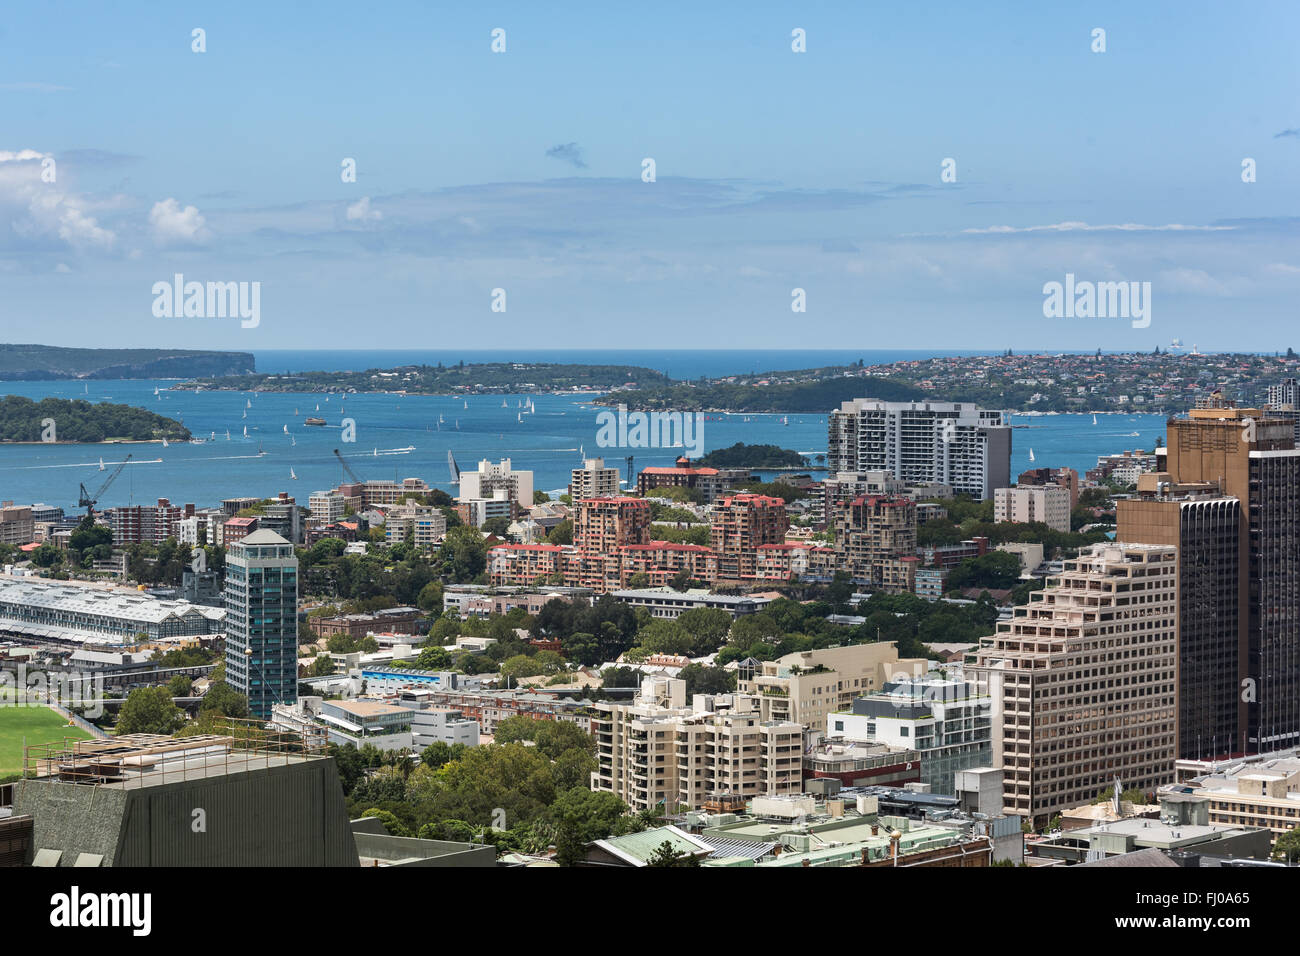 Le port de Sydney avec les navires et les yachts et les bâtiments adjacents de hauteur Banque D'Images